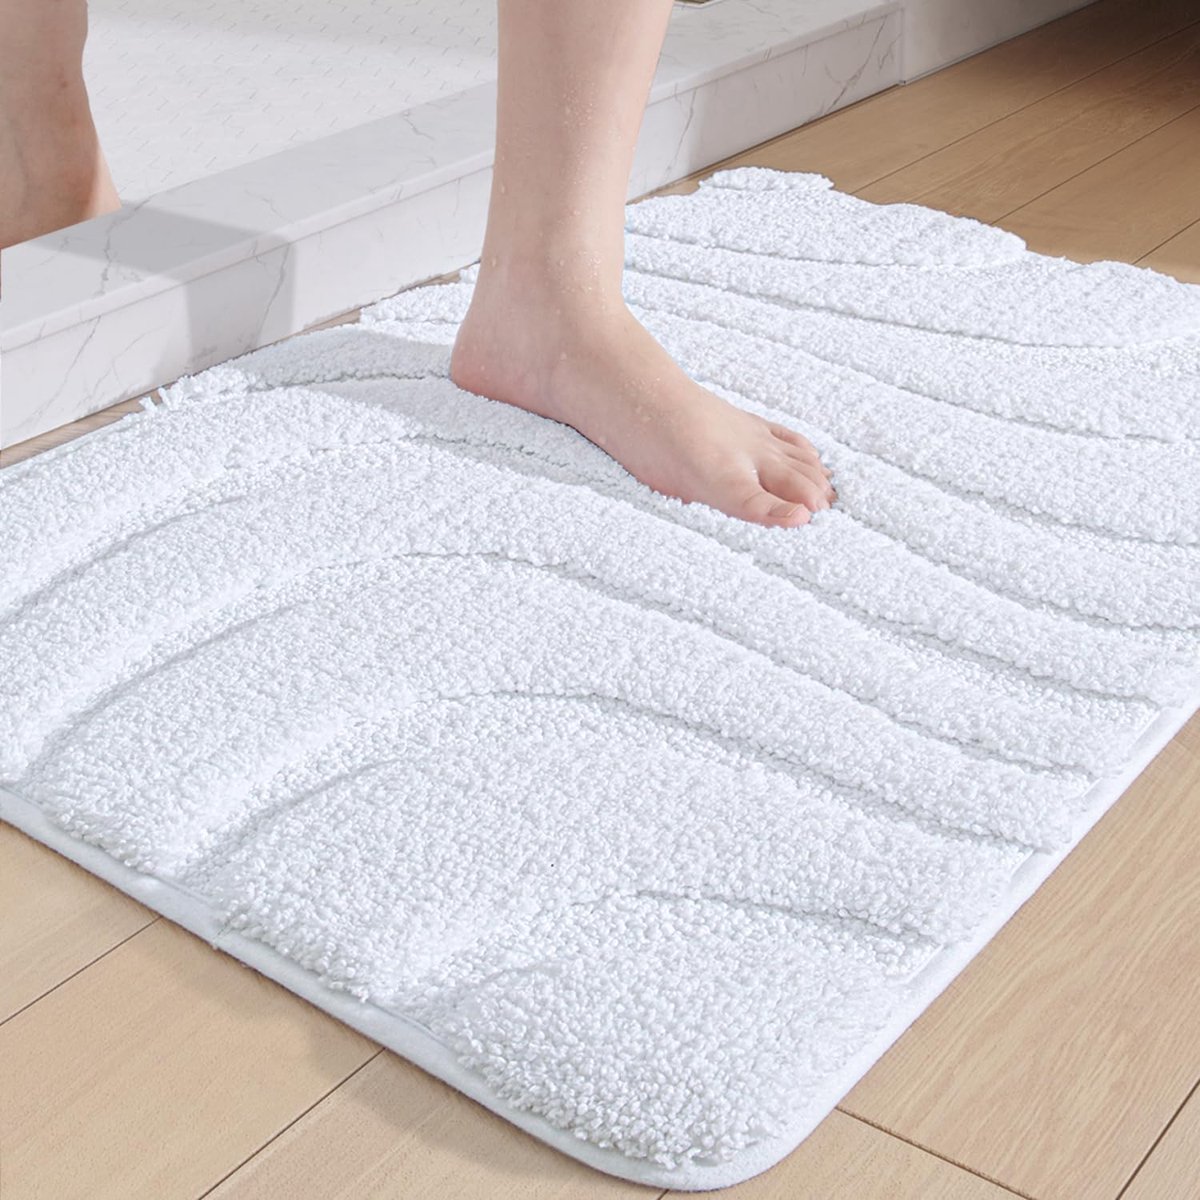 LifeStages® Badmat, antislip, 60 x 110 cm, zachte microvezel-badmat, waterabsorberende badkamertapijt, machinewasbaar, badmat voor bad, douche en badkamer, wit